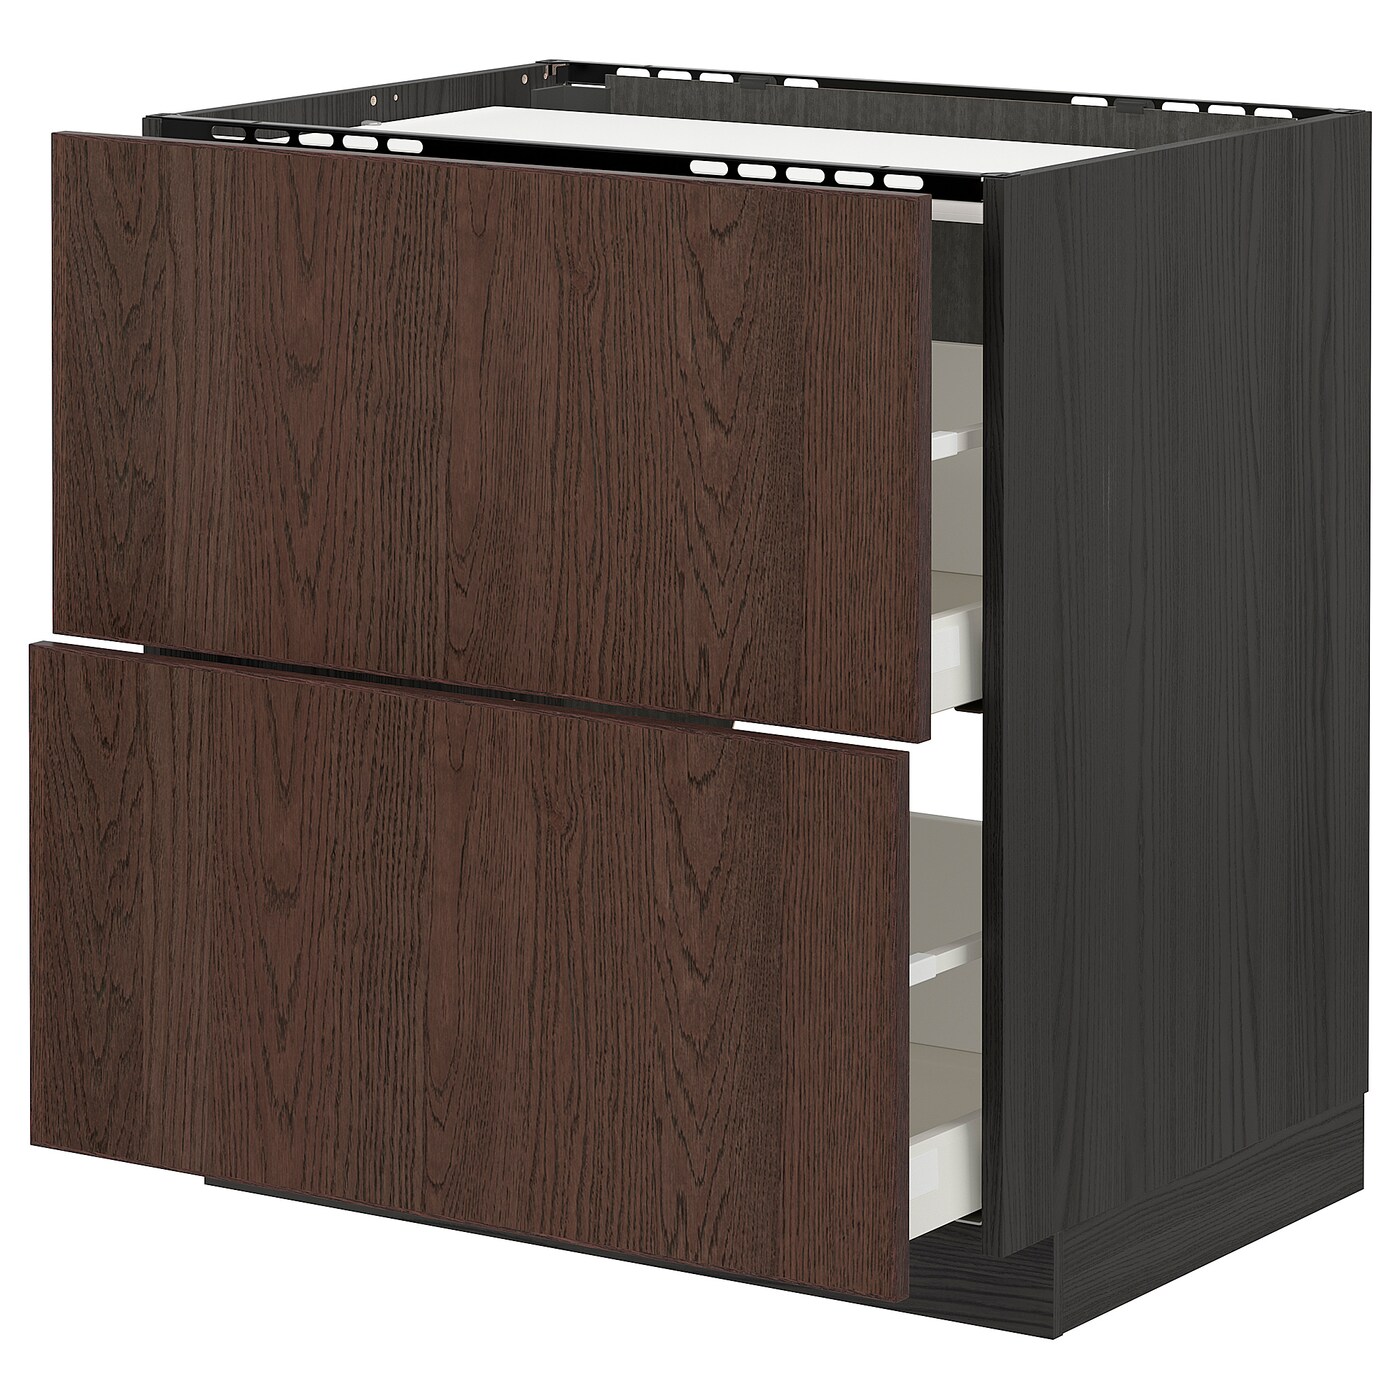 Напольный шкаф - IKEA METOD MAXIMERA, 88x62x80см, черный/коричневый, МЕТОД МАКСИМЕРА ИКЕА